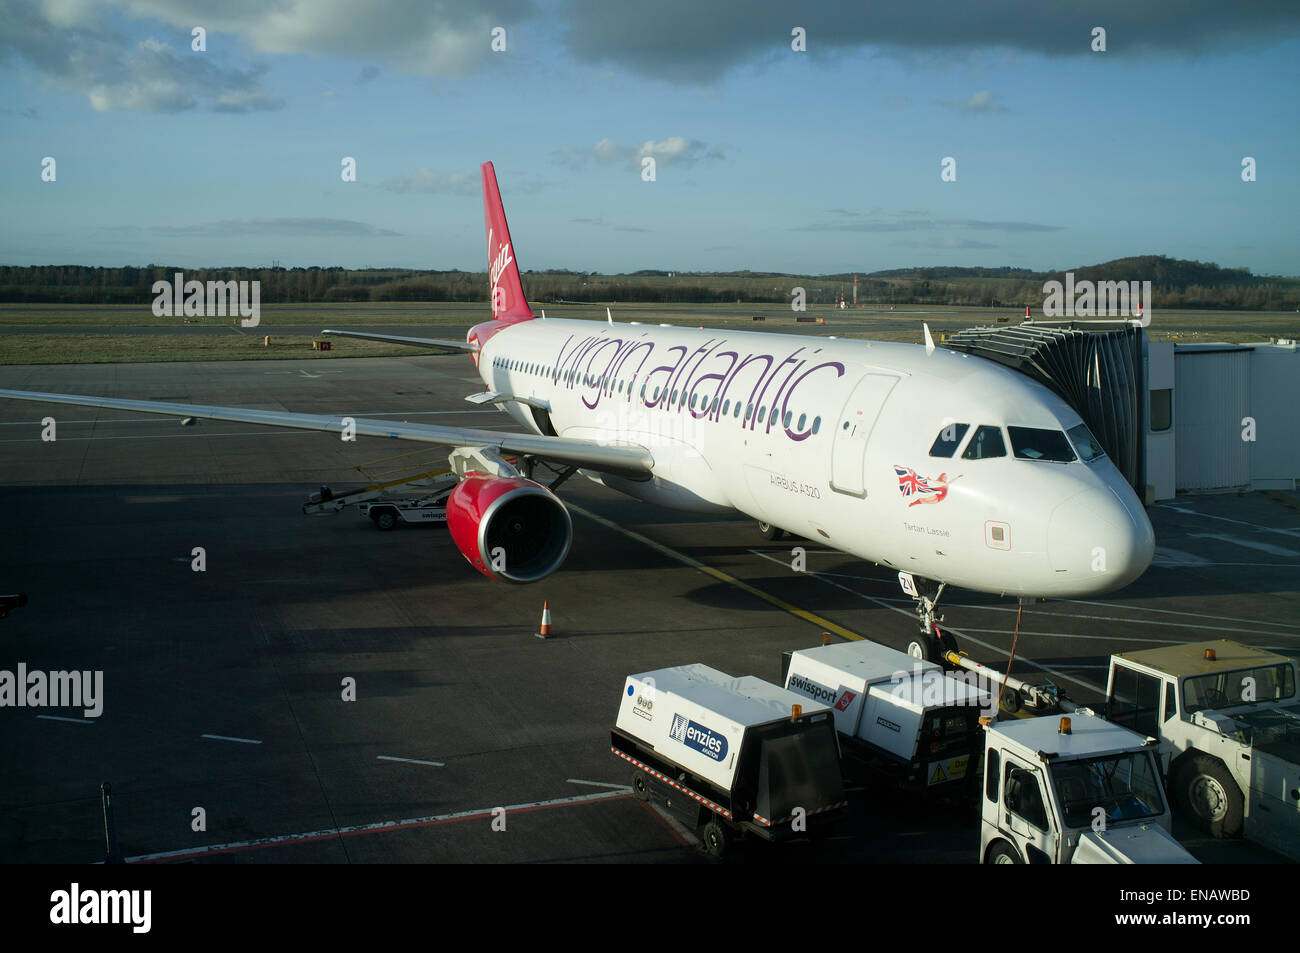 Dh Virgin Atlantic Virgin Atlantic AIRPORT Édimbourg Édimbourg petit avion rouge avions avion avion Banque D'Images